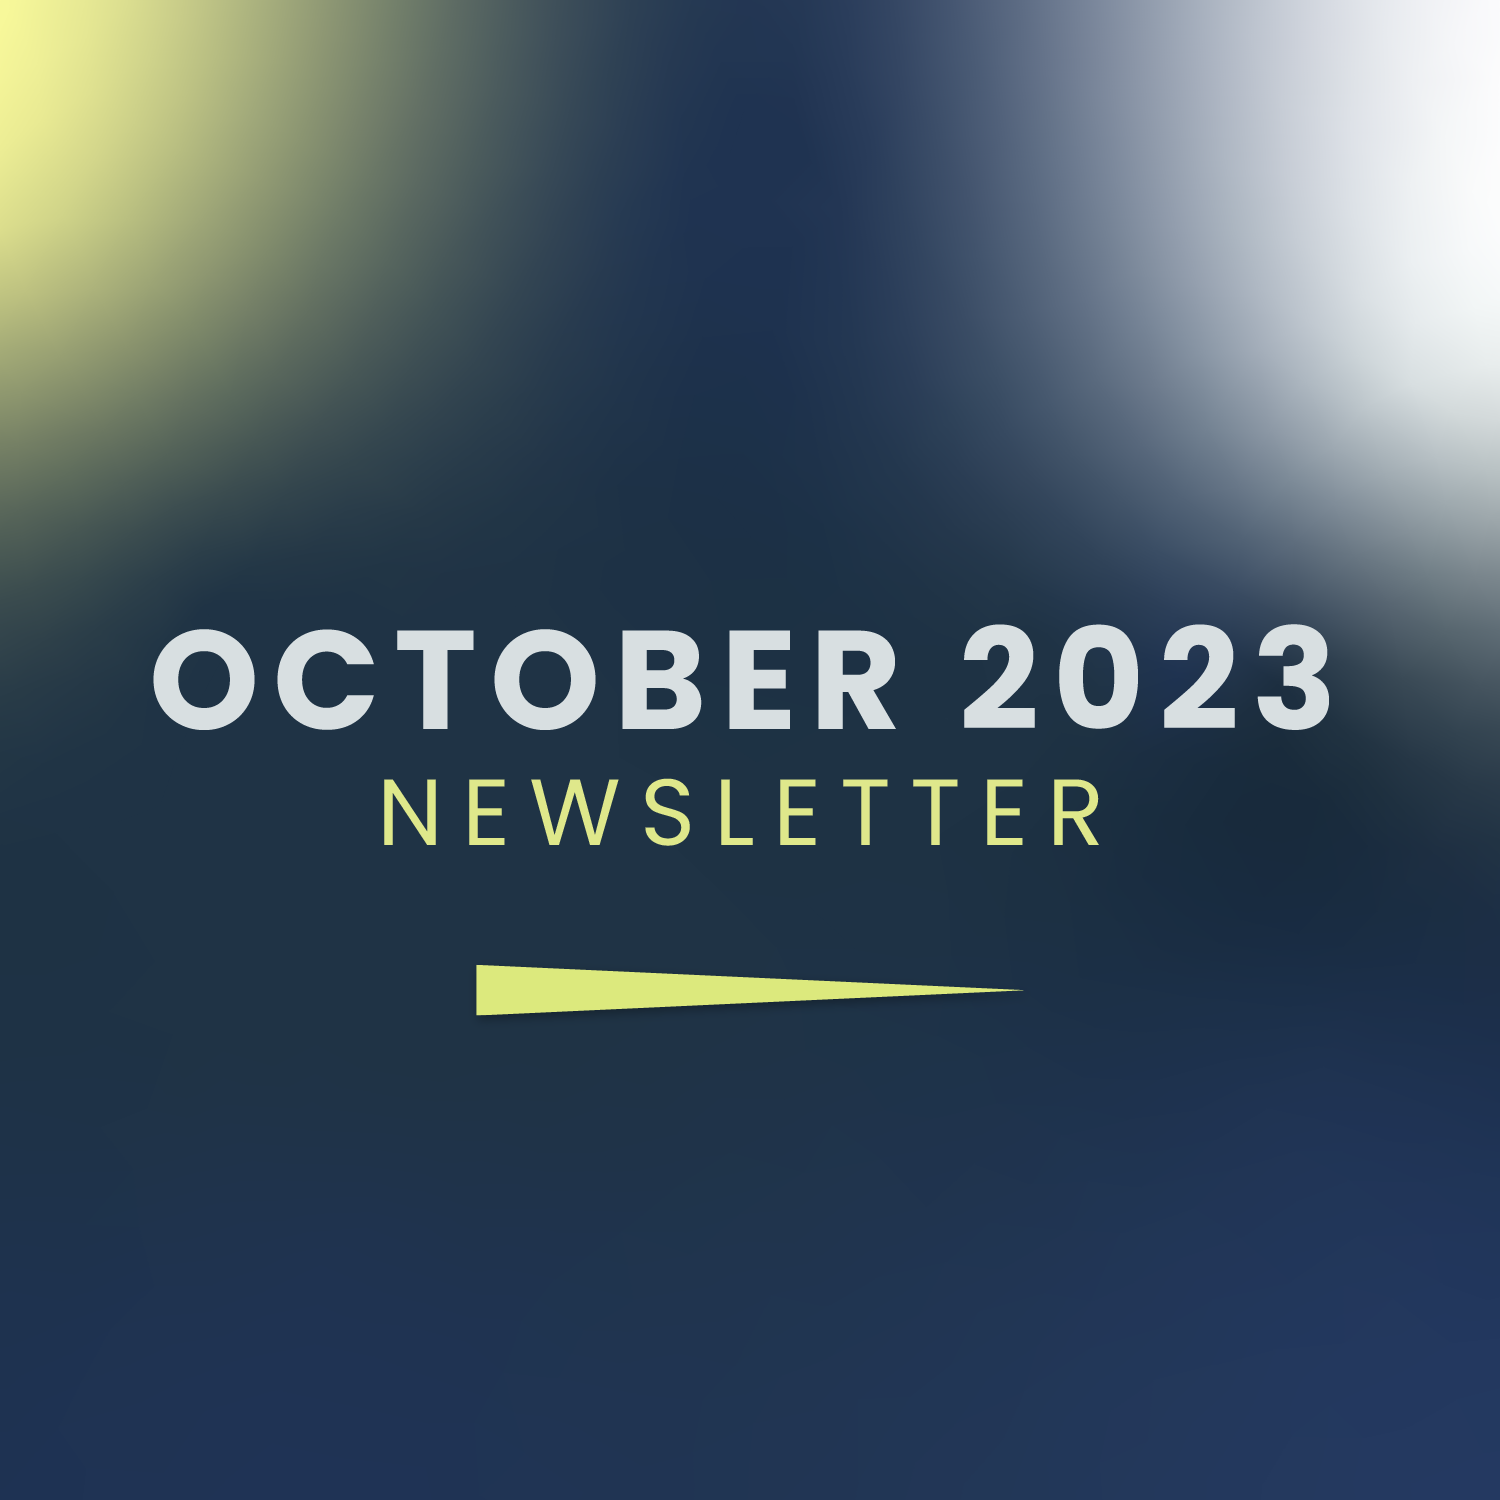 October Newsletter 2023